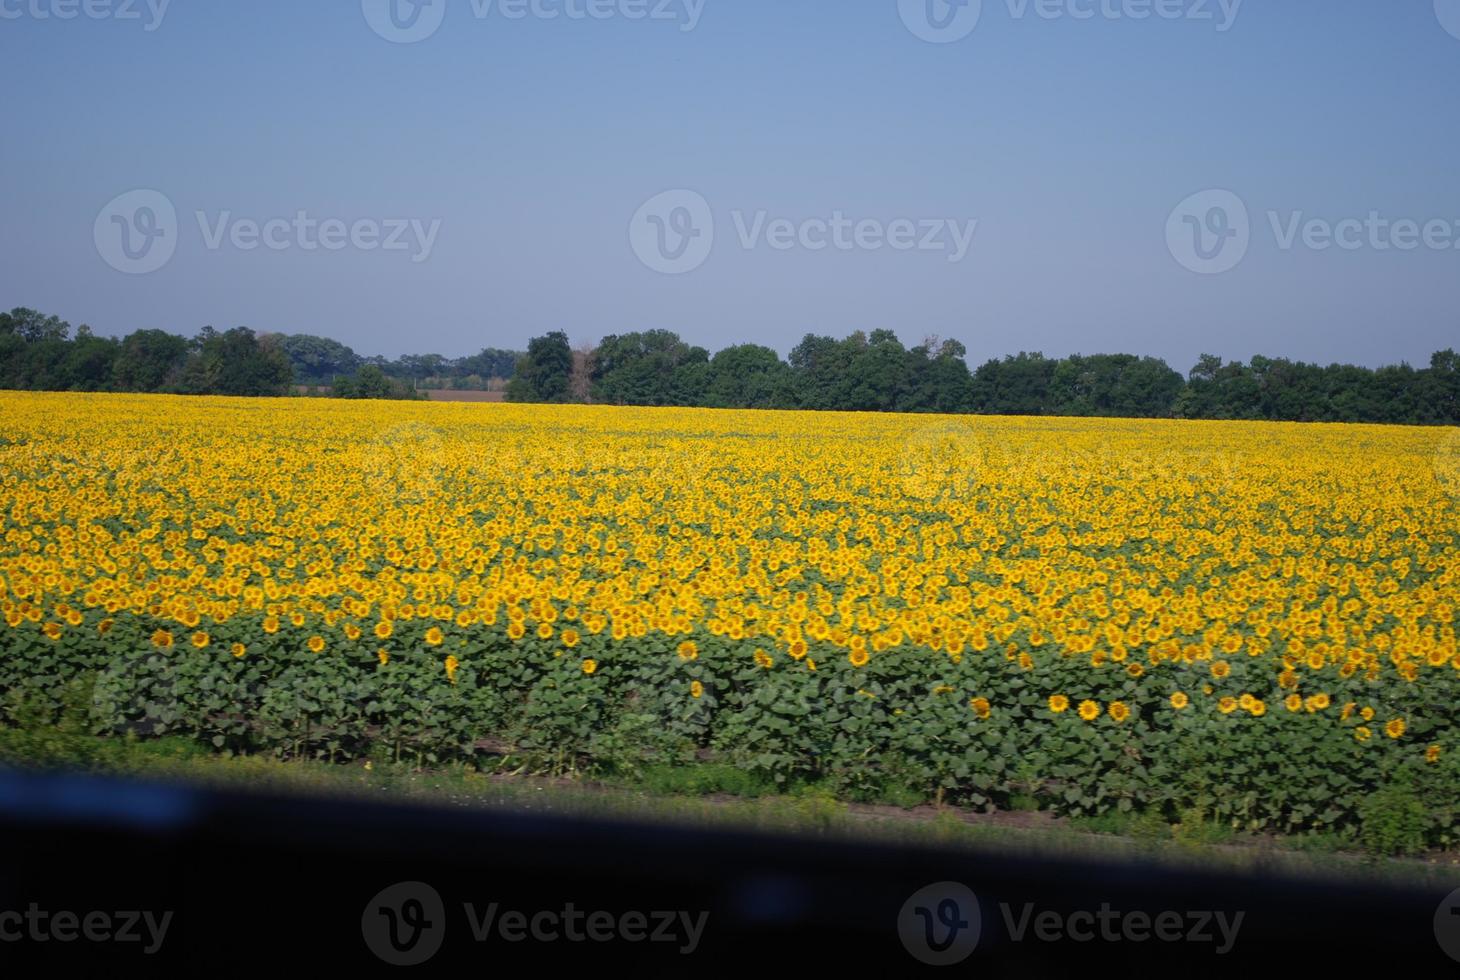 ukrainisches sonnenblumenfeld blick vom zug foto